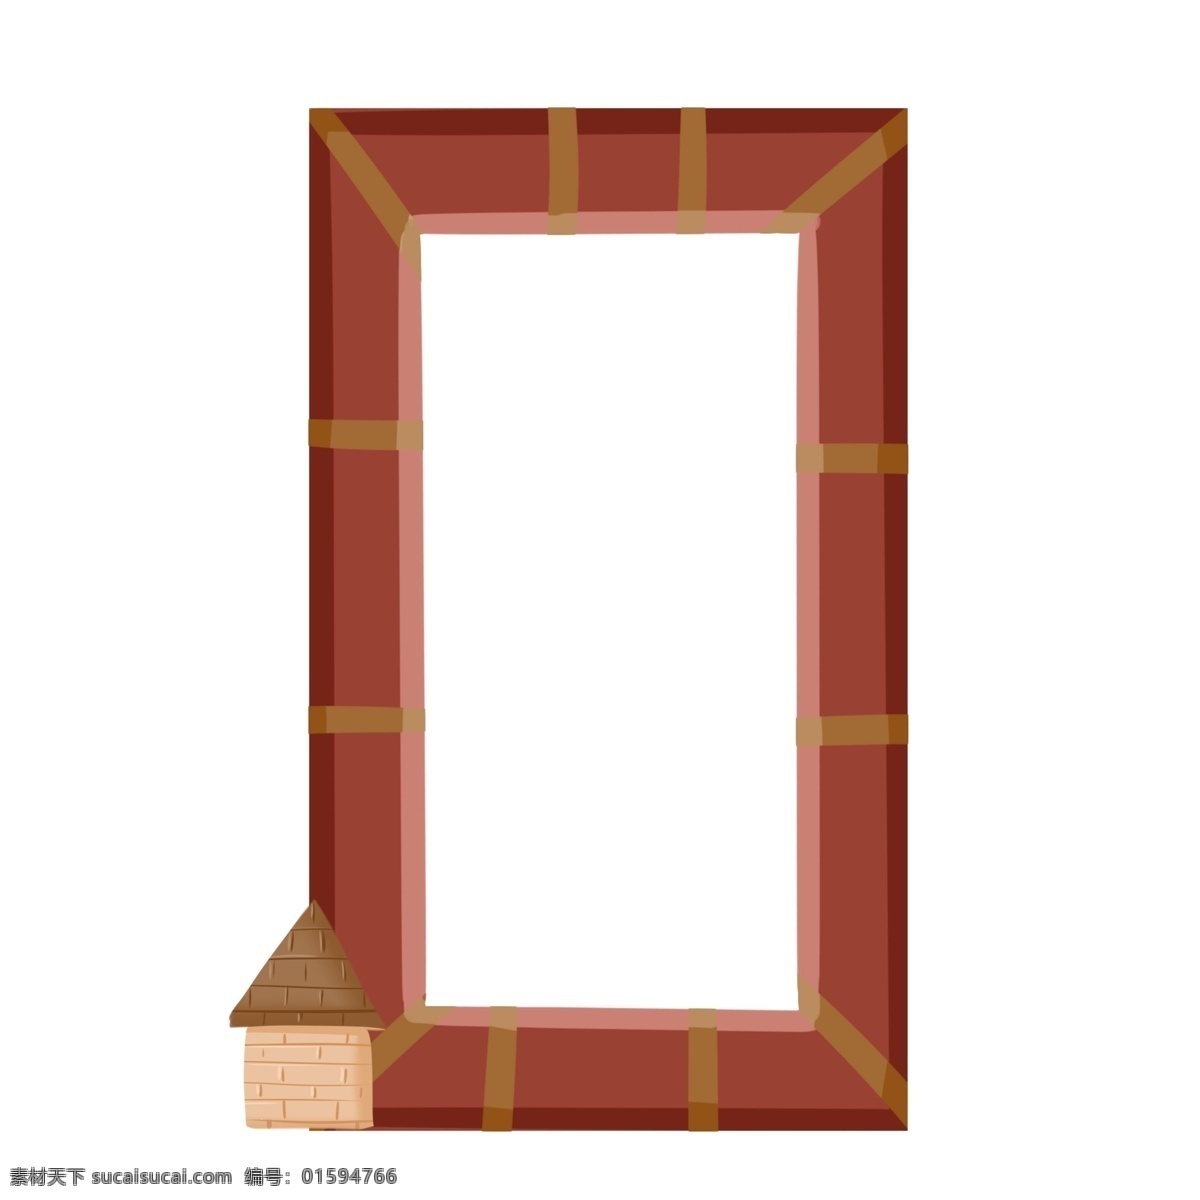 创意 相框 边框 装饰 创意边框 木质相框 相框边框 边框装饰 可爱的边框 小 房子 边框插画